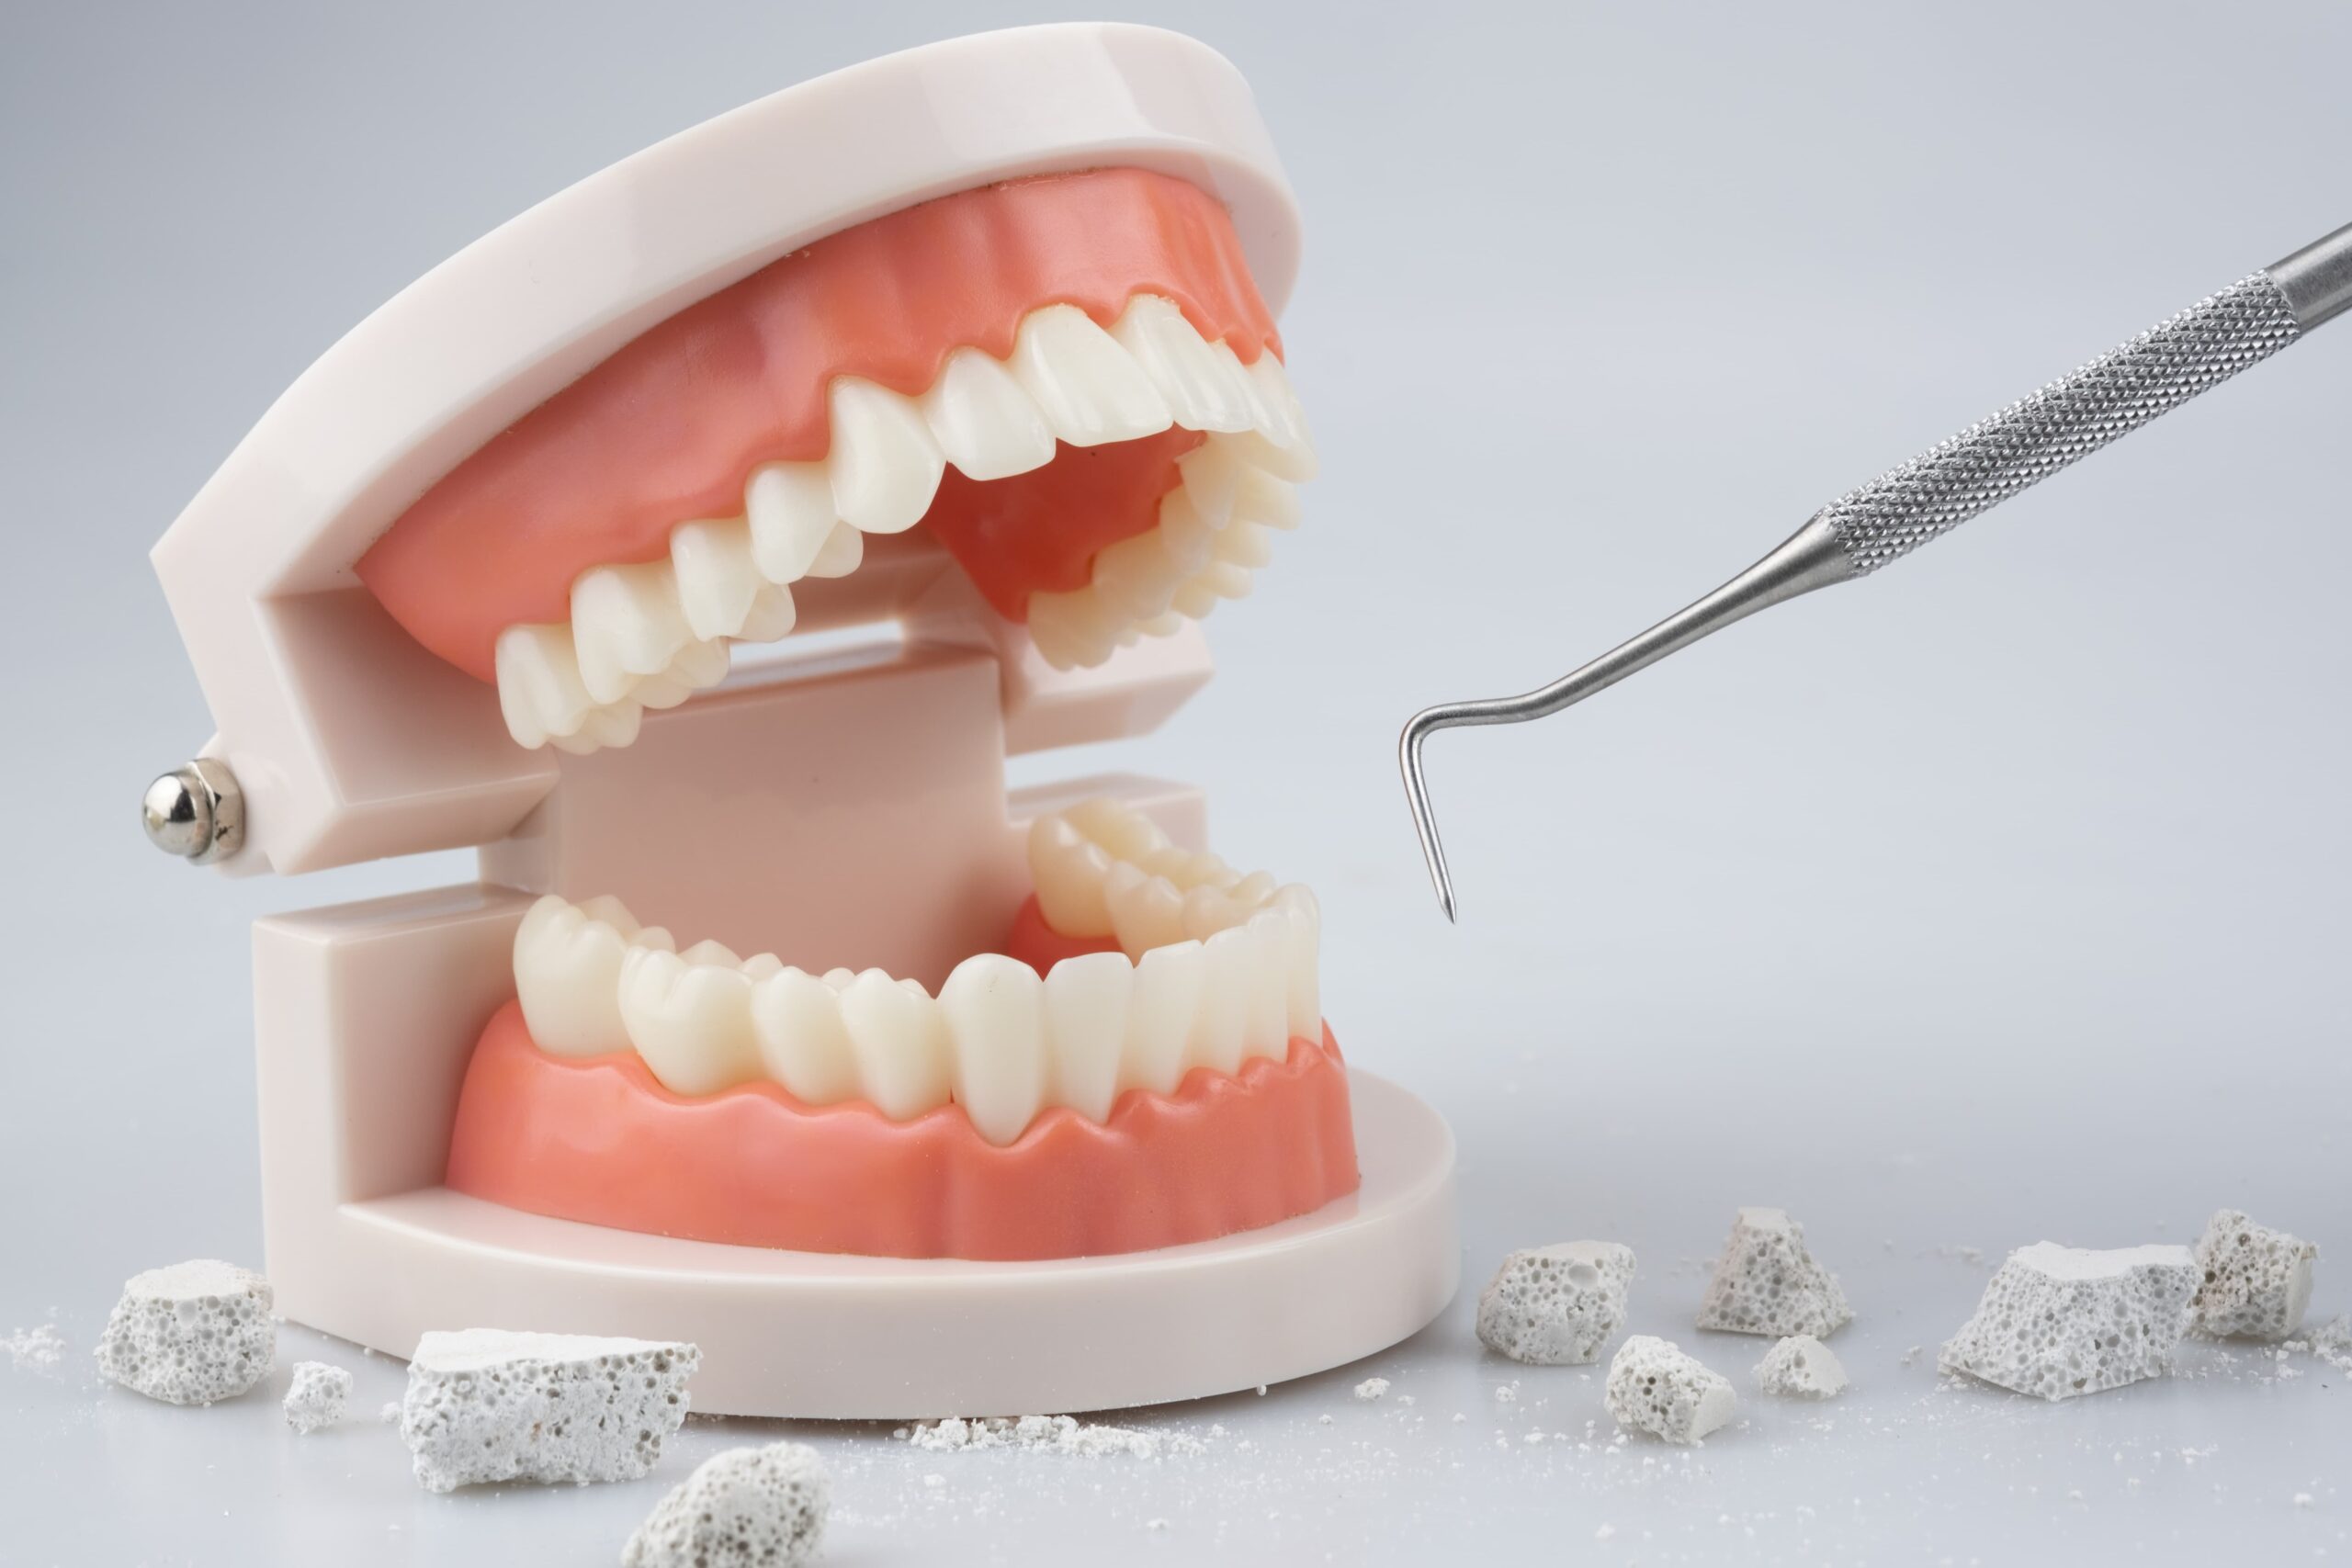 歯石除去のイメージ